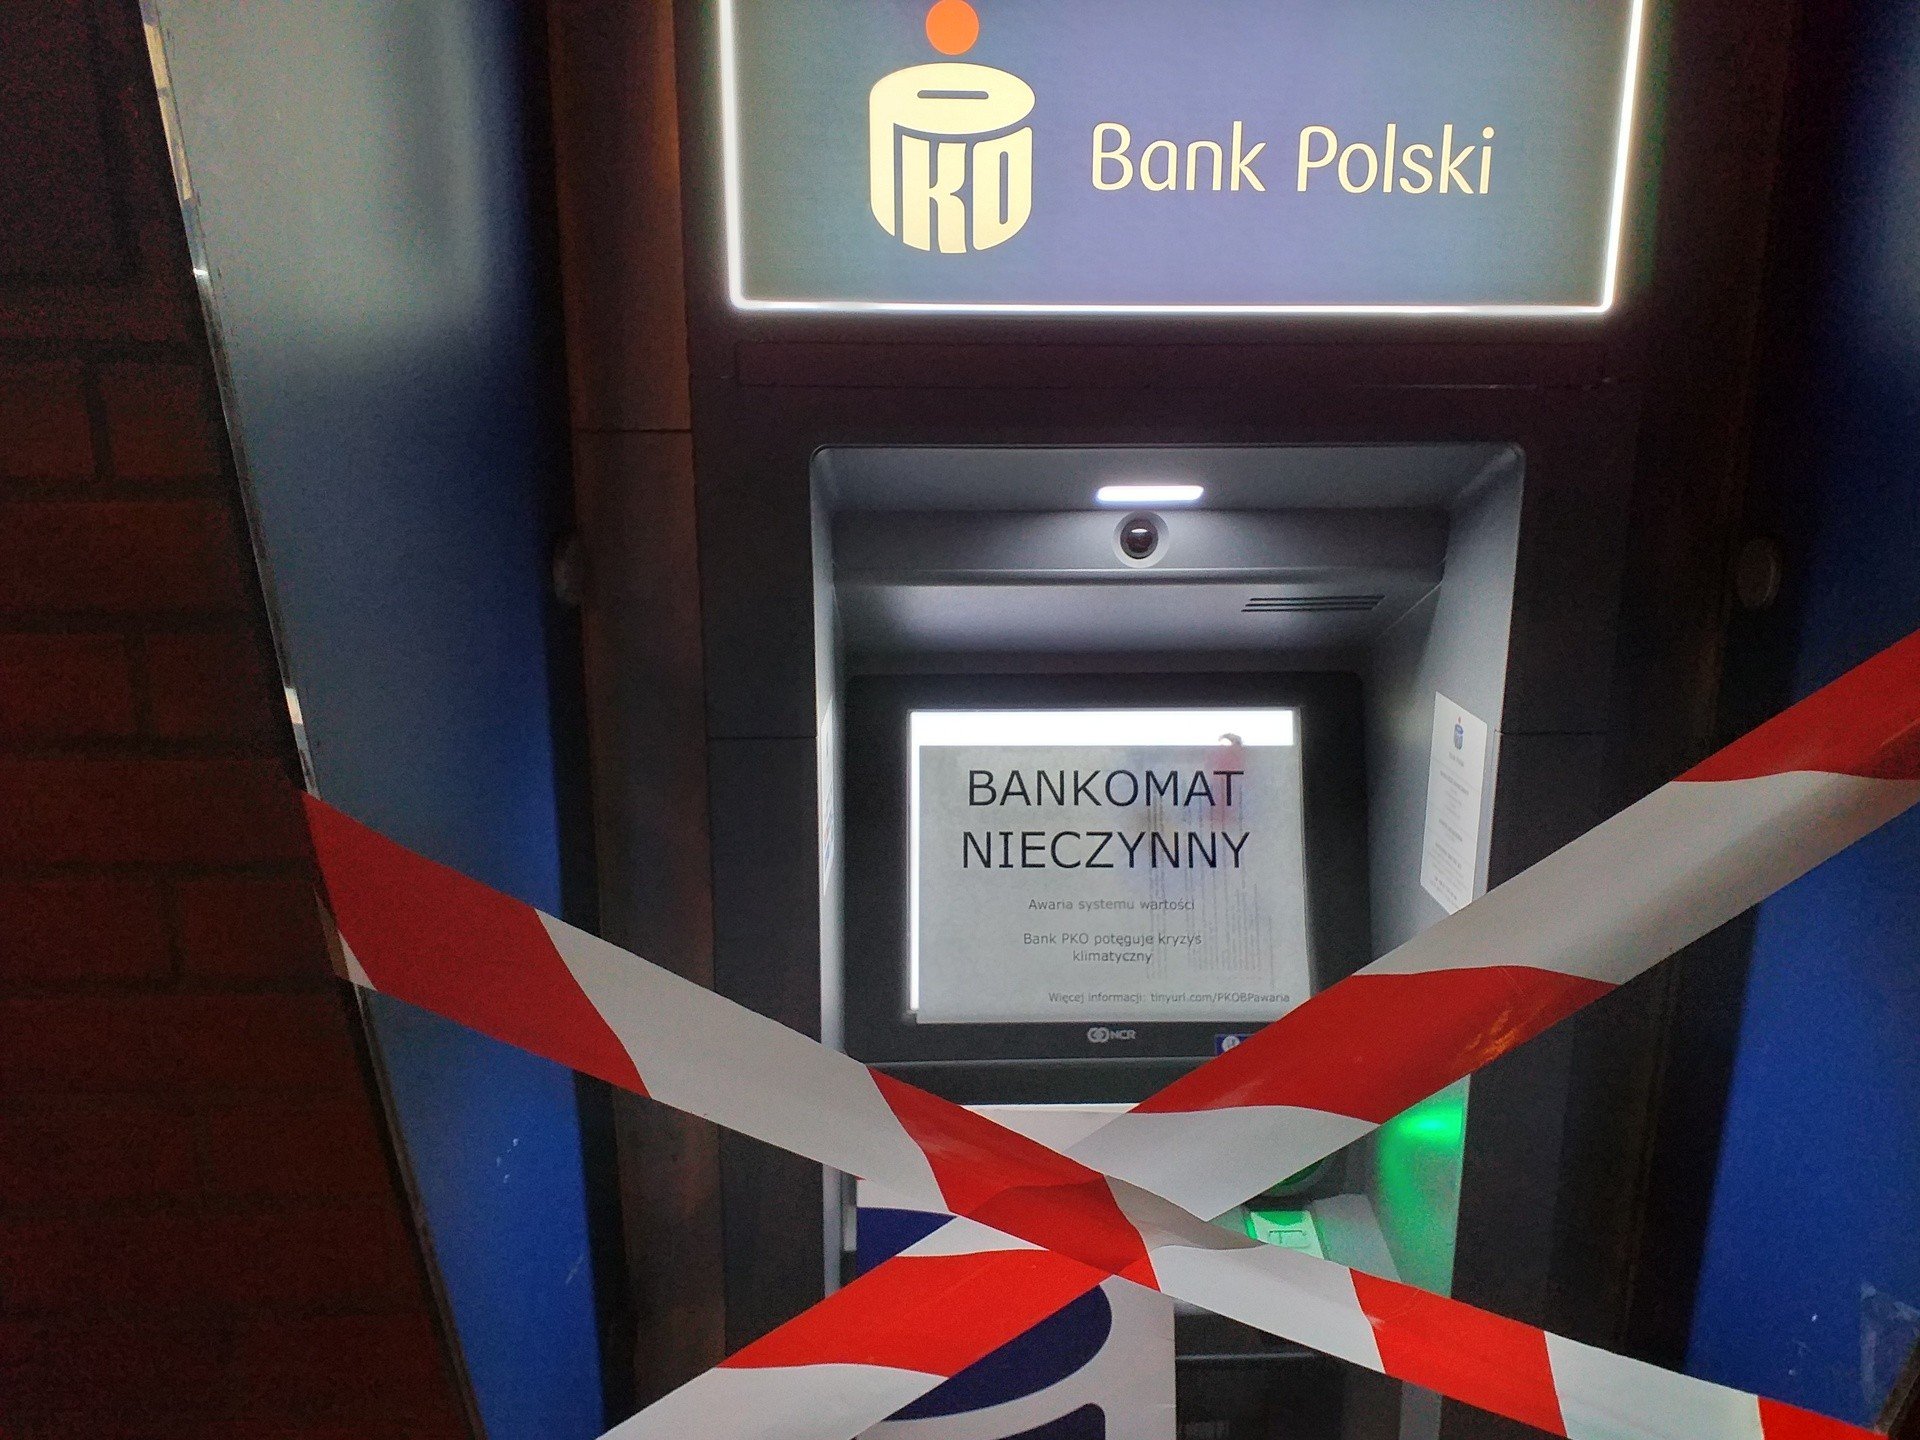 Poznańscy aktywiści kontra wielkie korporacje bankowe. Extinction Rebellion  zakleja bankomaty PKO BP taśmą | Głos Wielkopolski